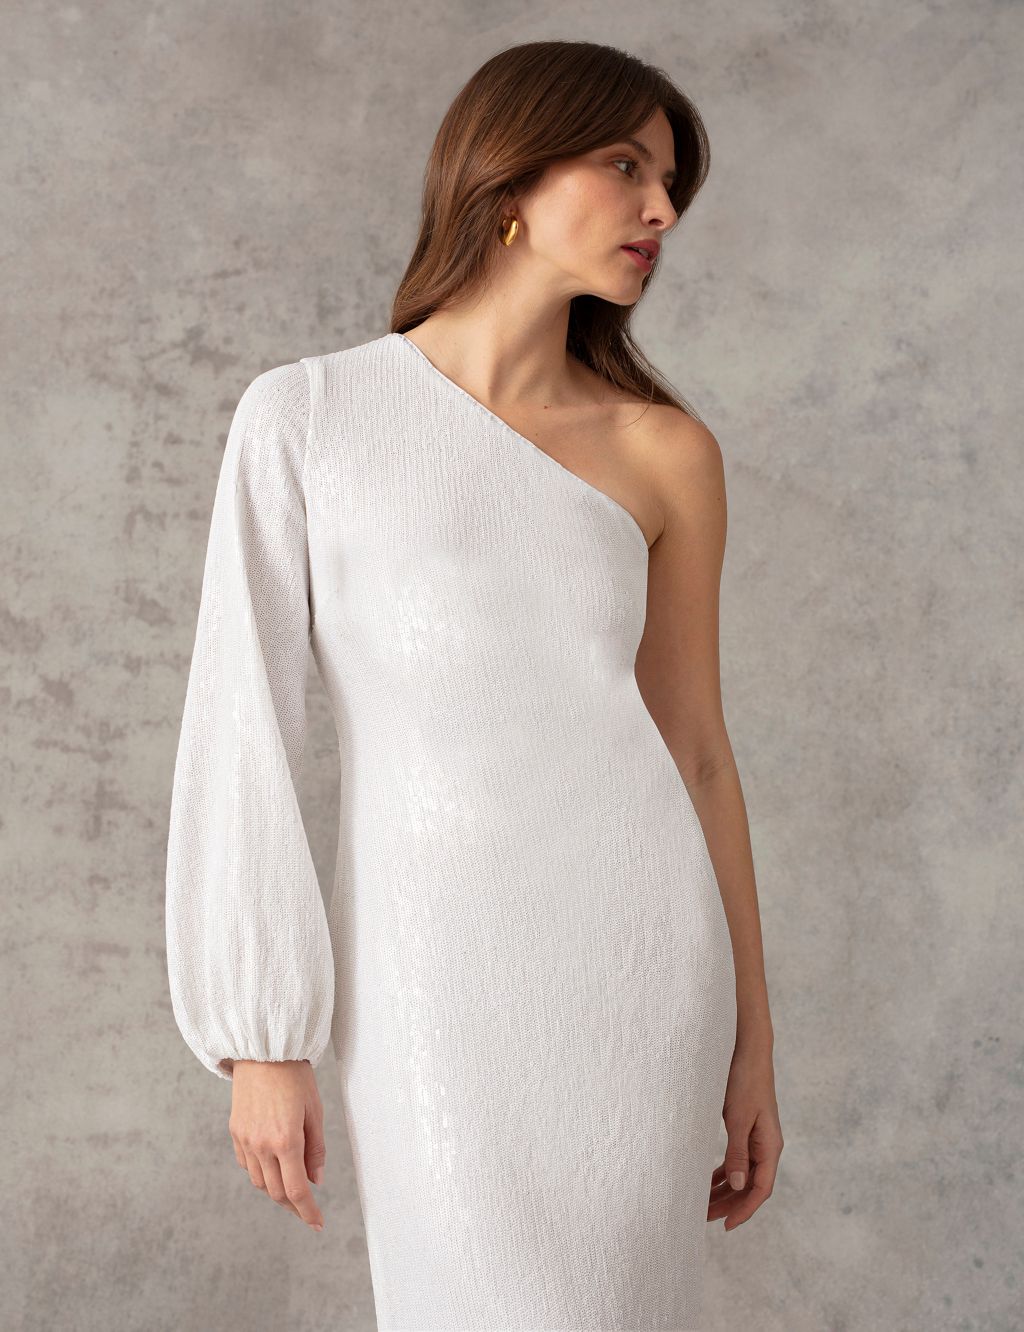 Sequin One Shoulder Midaxi Column Dress 5 of 9